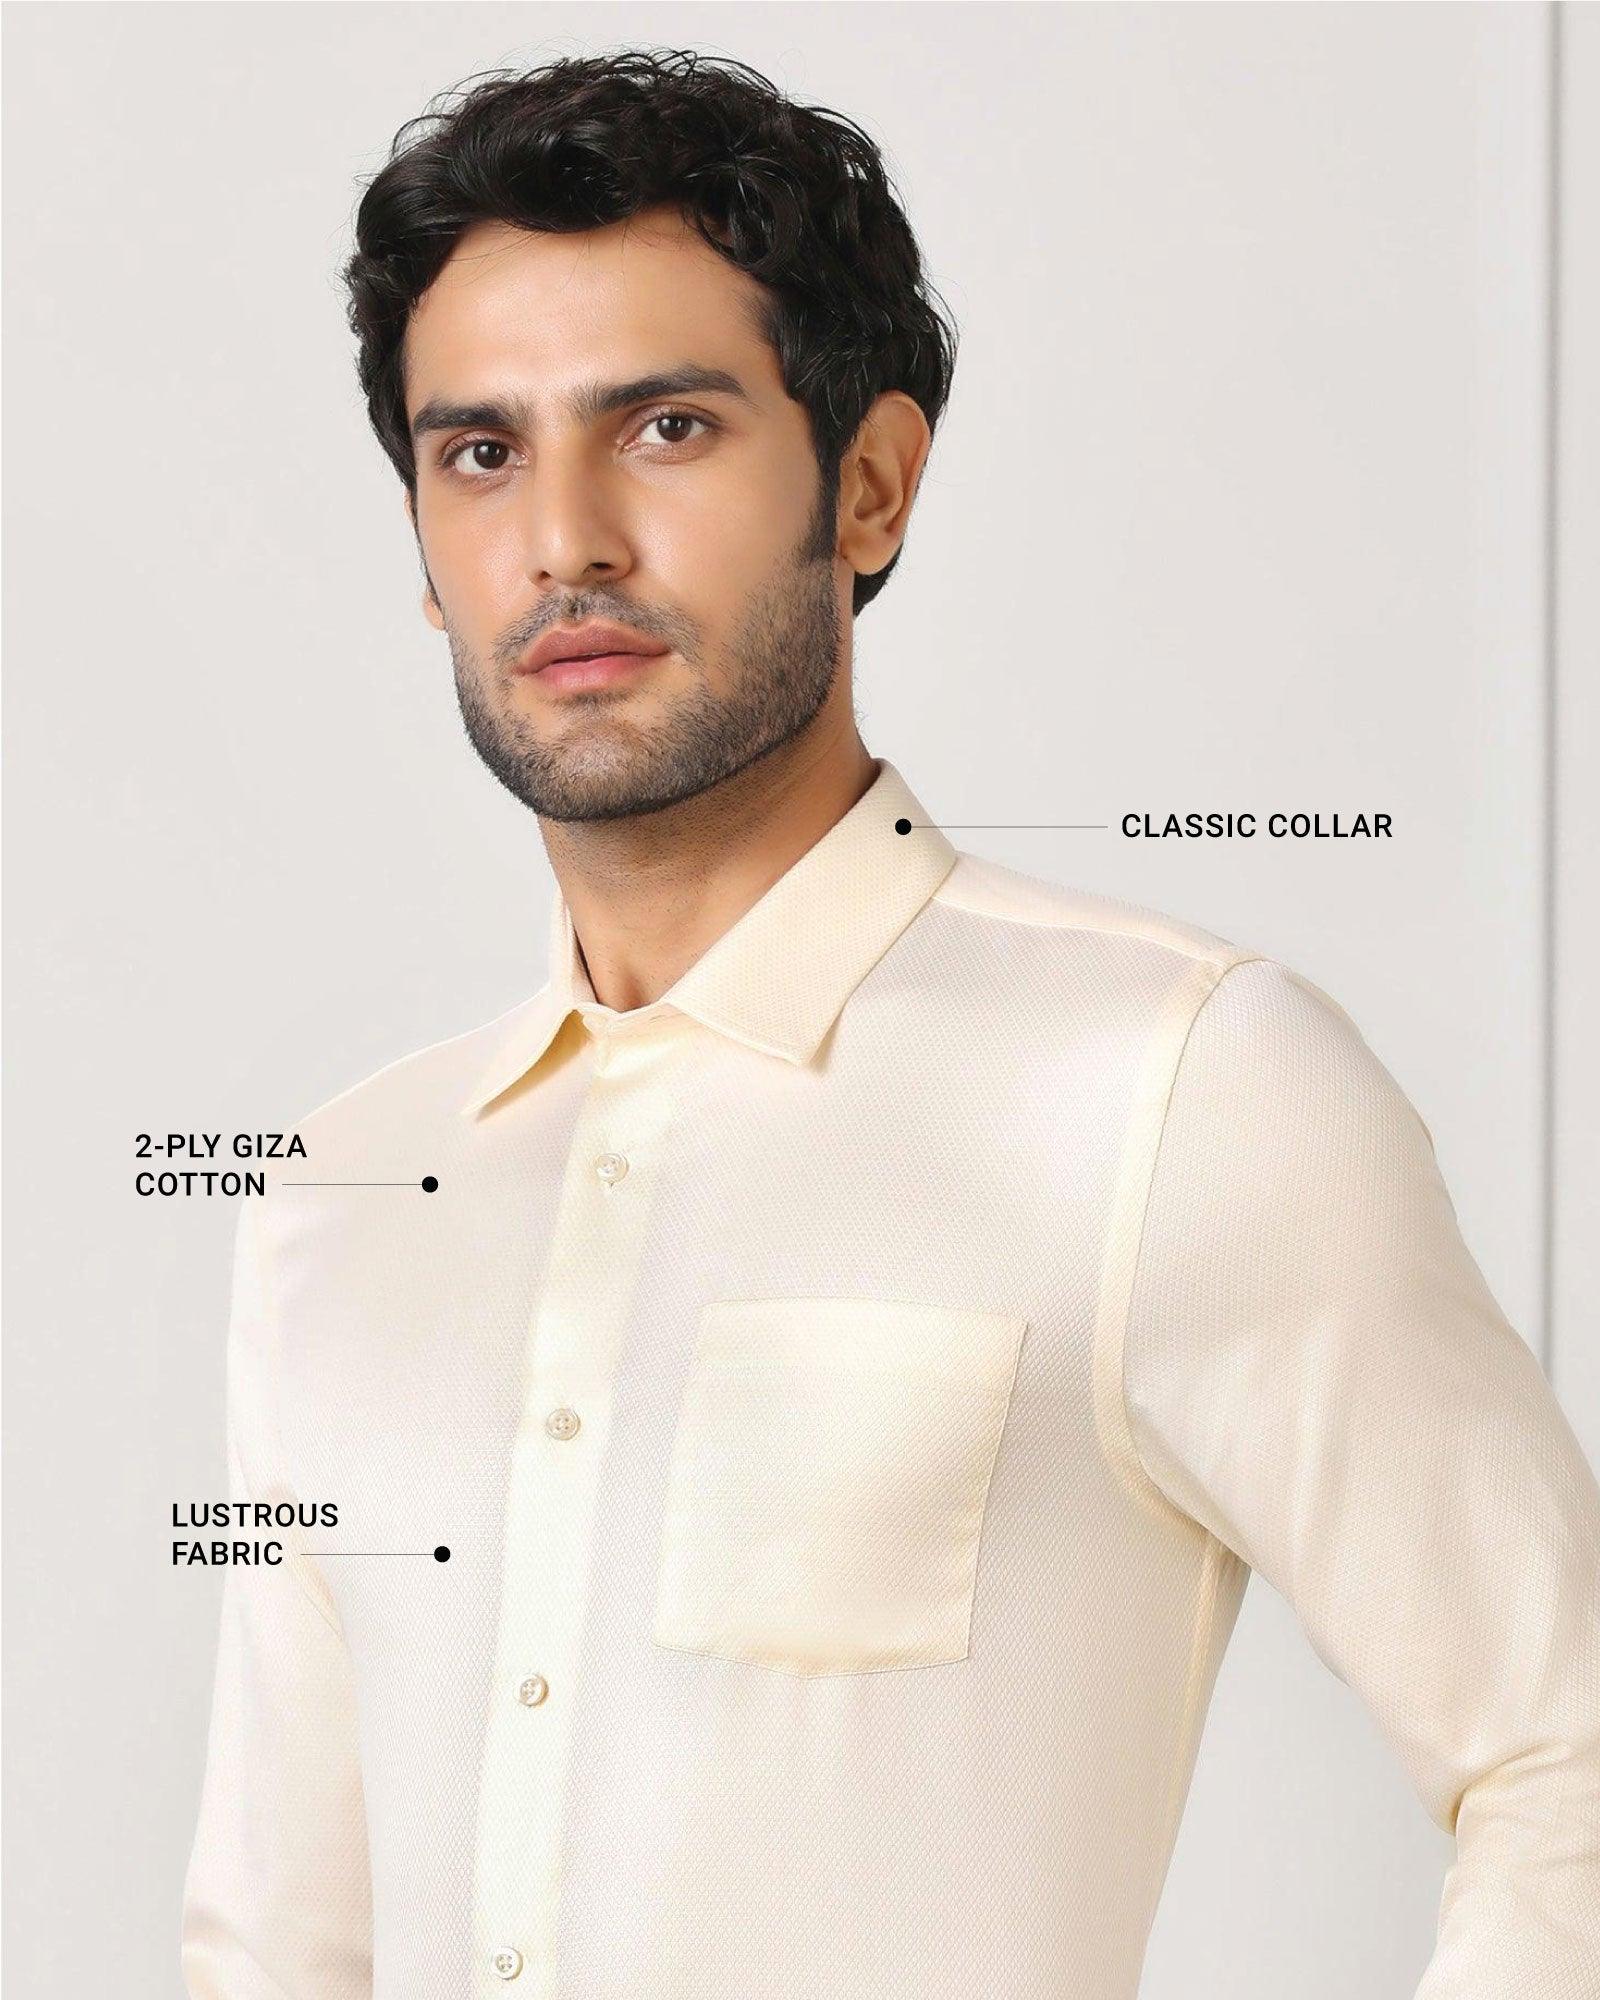 Buy Men Elegant White Shirt Green Trouser for Office Wear, Mens Formal Shirt  and Pants for Wedding Shirt and Pants for Groomsmen White Men Shirt Online  in India - Etsy